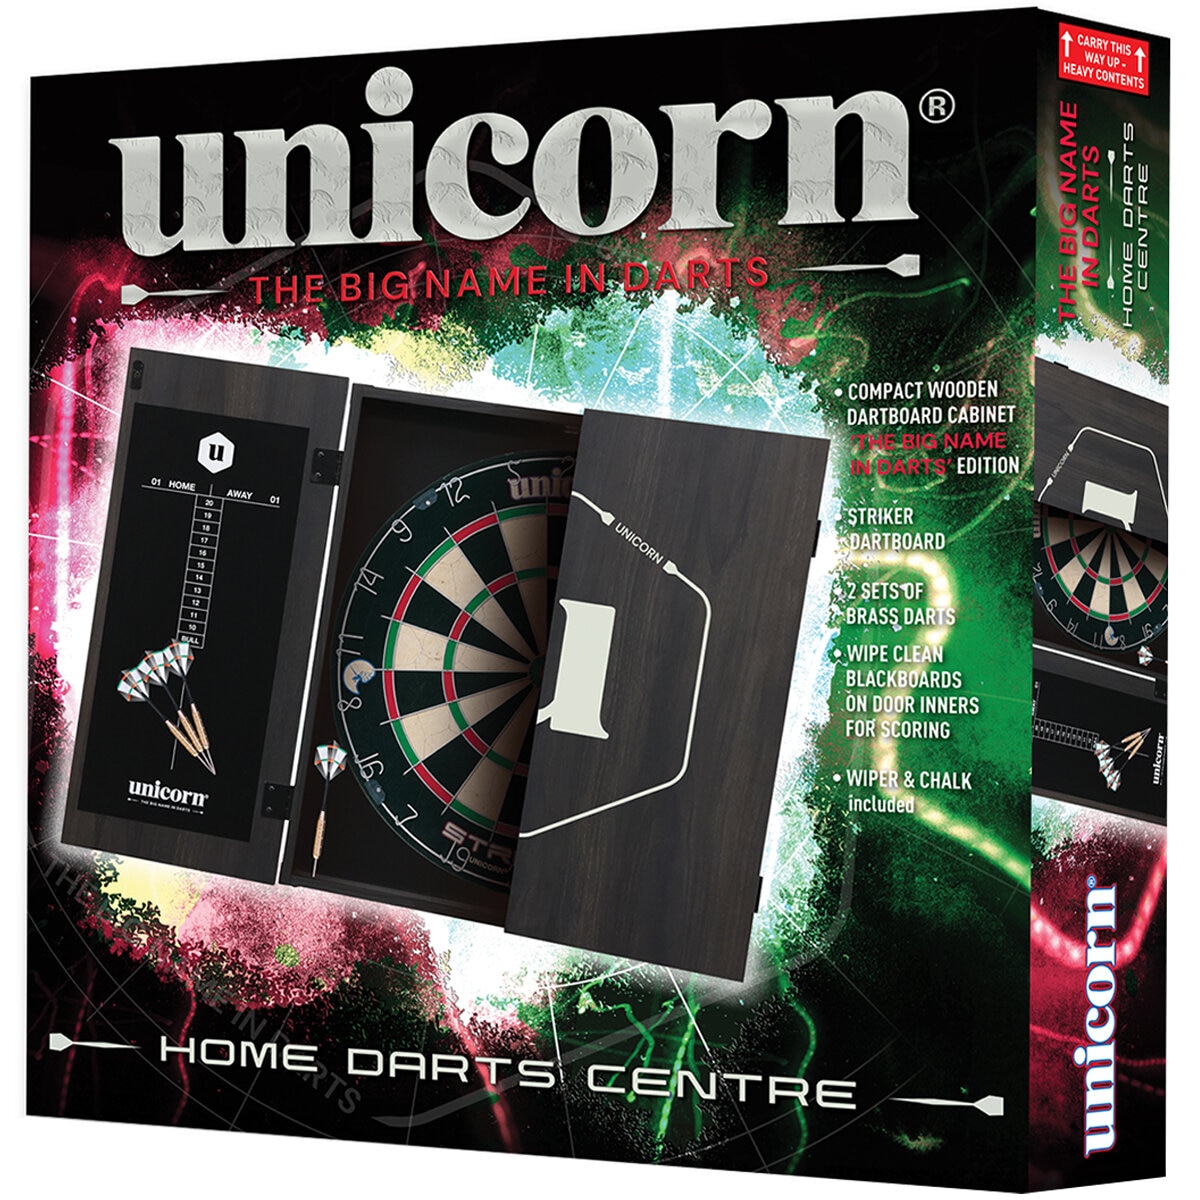 Unicorn Dart Centre Maestro | Costco Australia